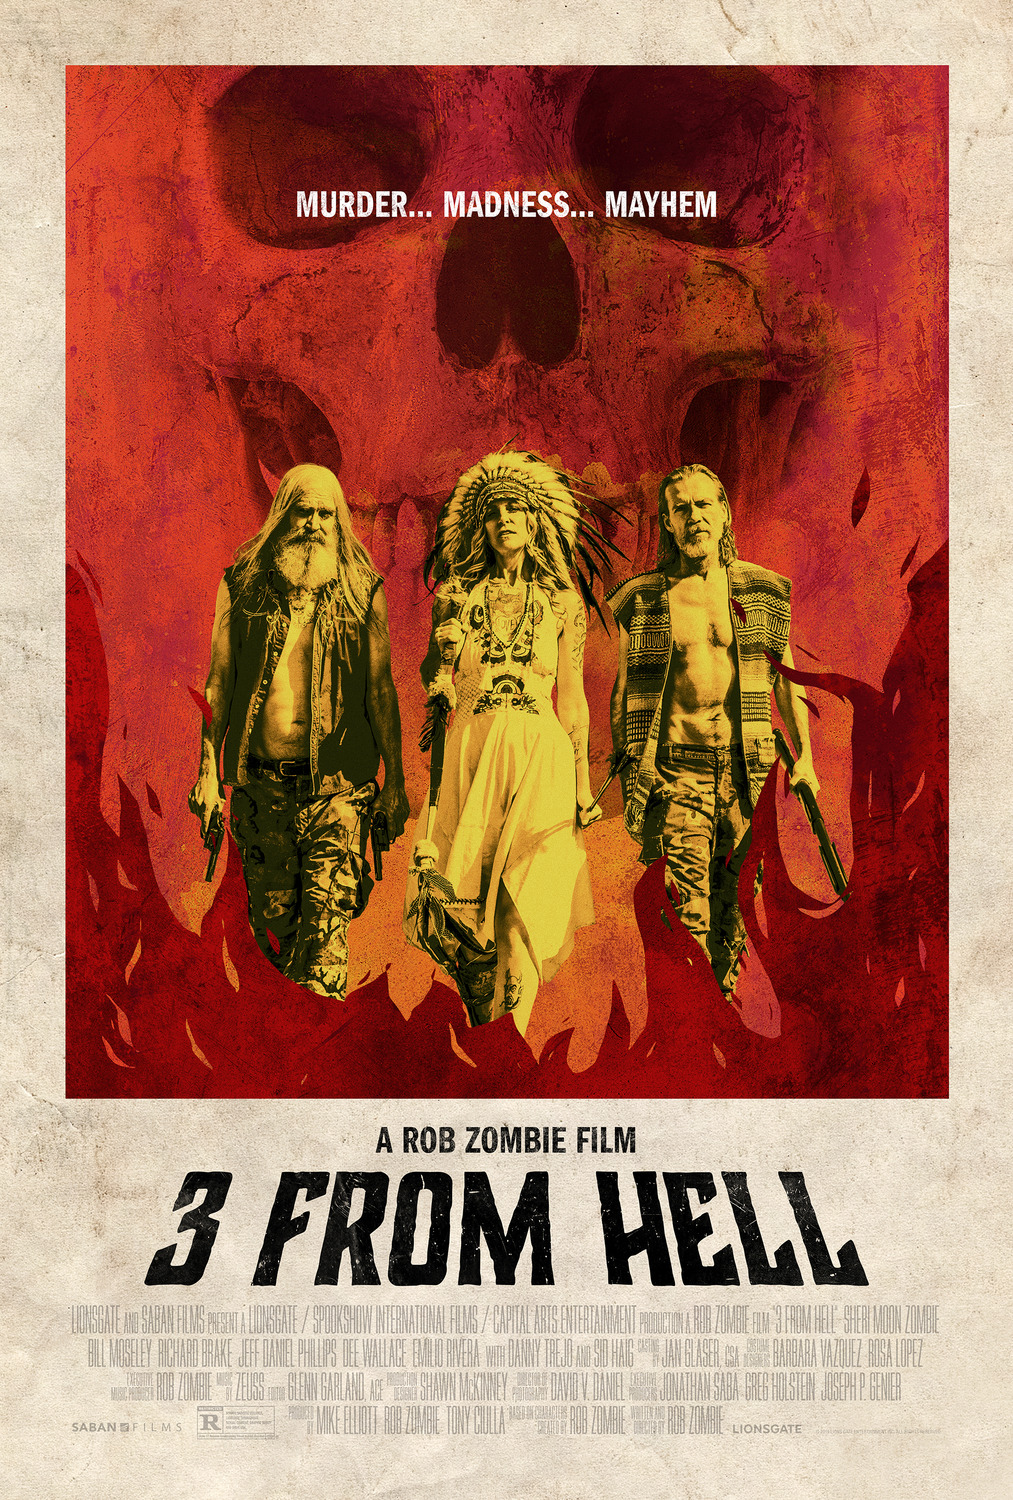 Nonton film Three from Hell layarkaca21 indoxx1 ganool online streaming terbaru